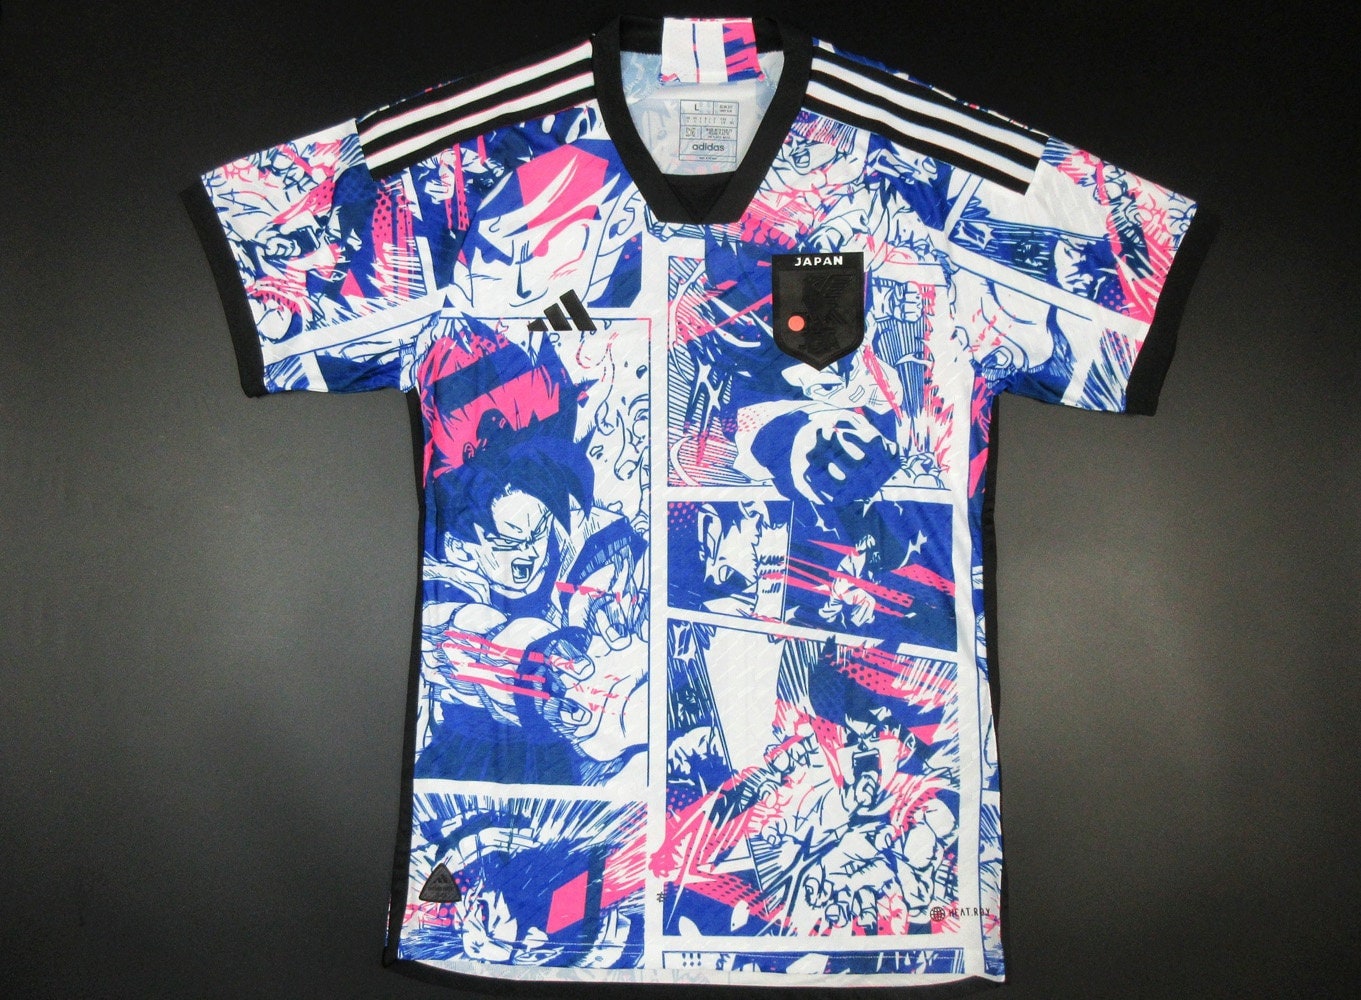 Japanese football captains' shirts